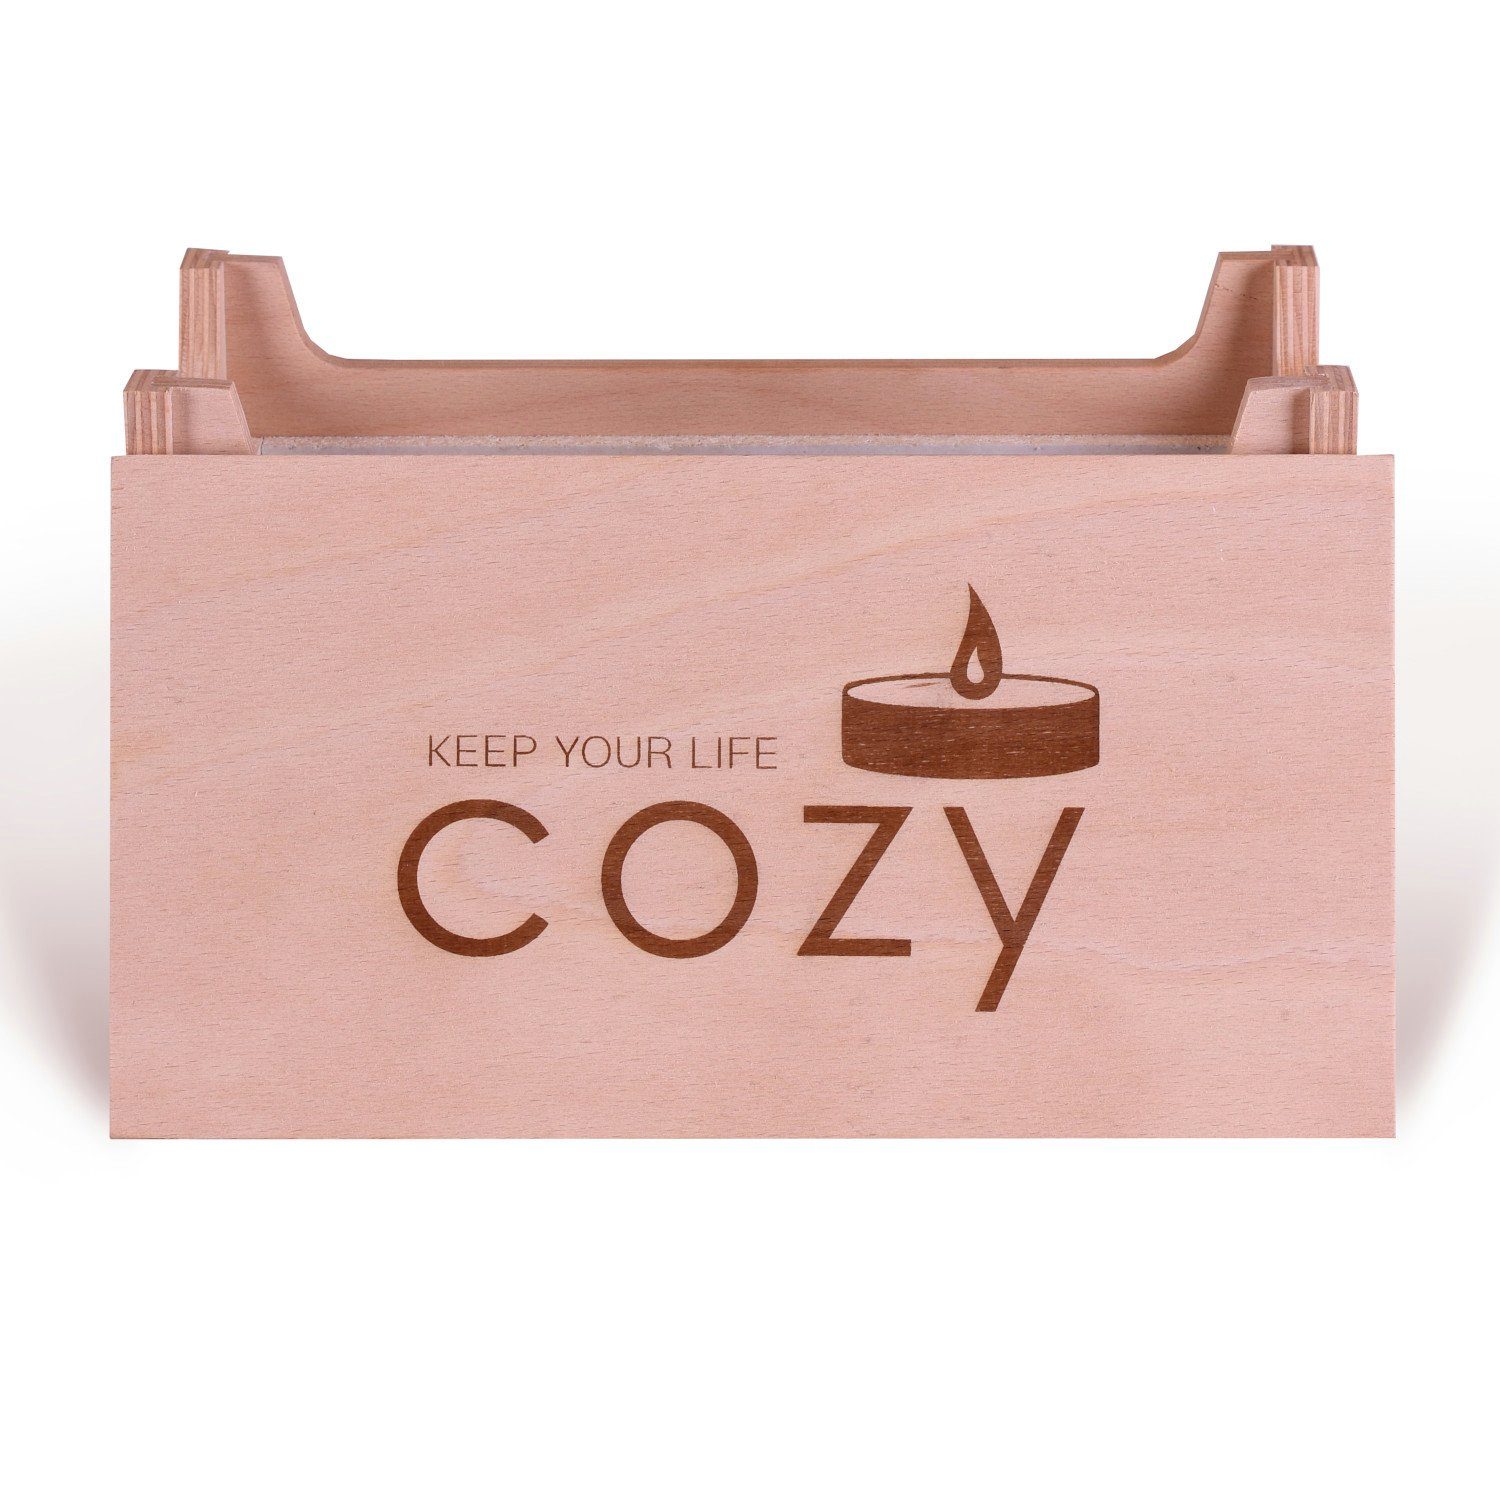 COZY Edition Teelichthalter Teelichtheizung Manufaktur life your keep